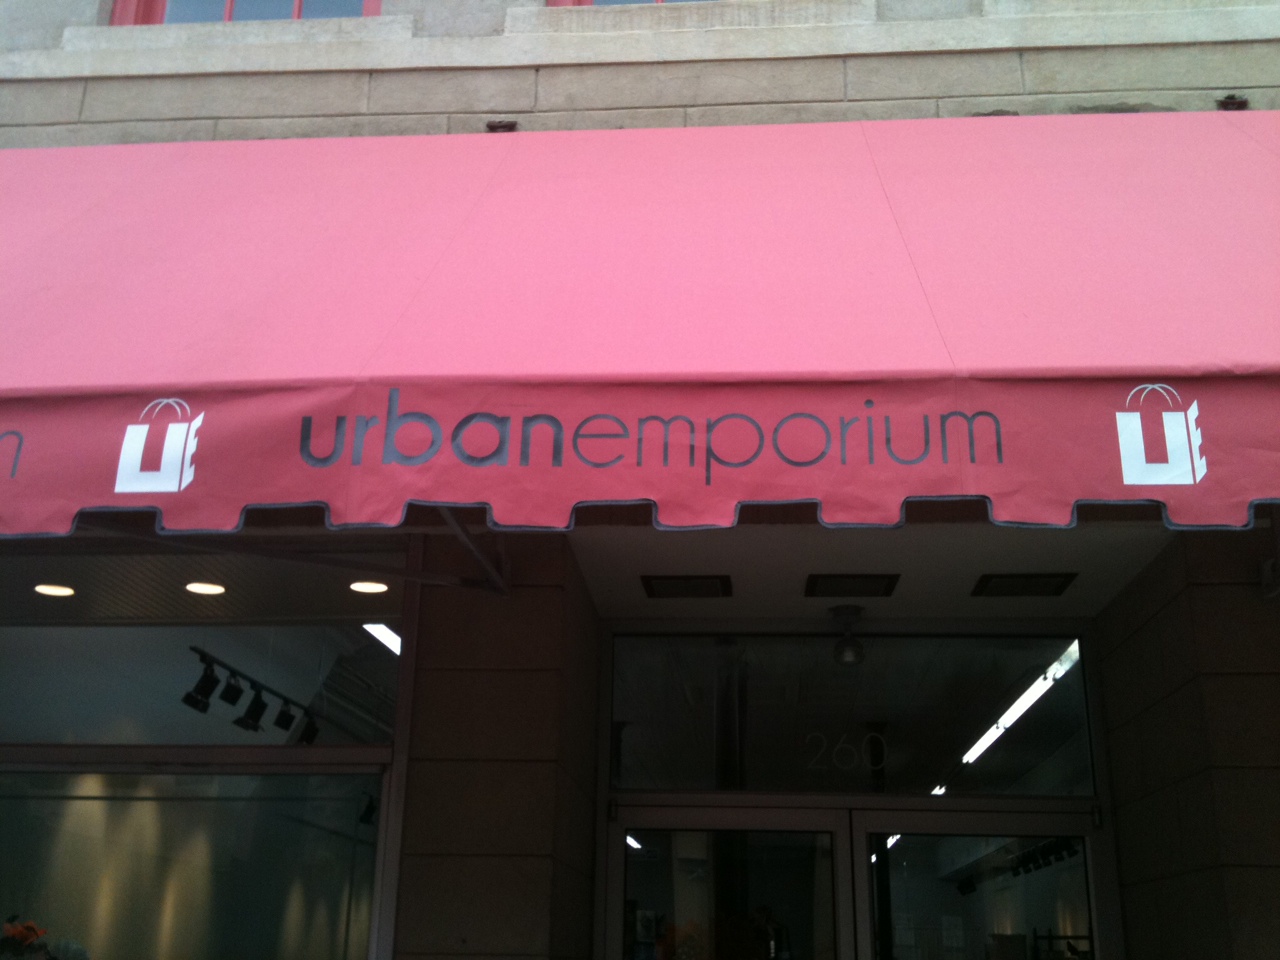 Urban Emporium LLC